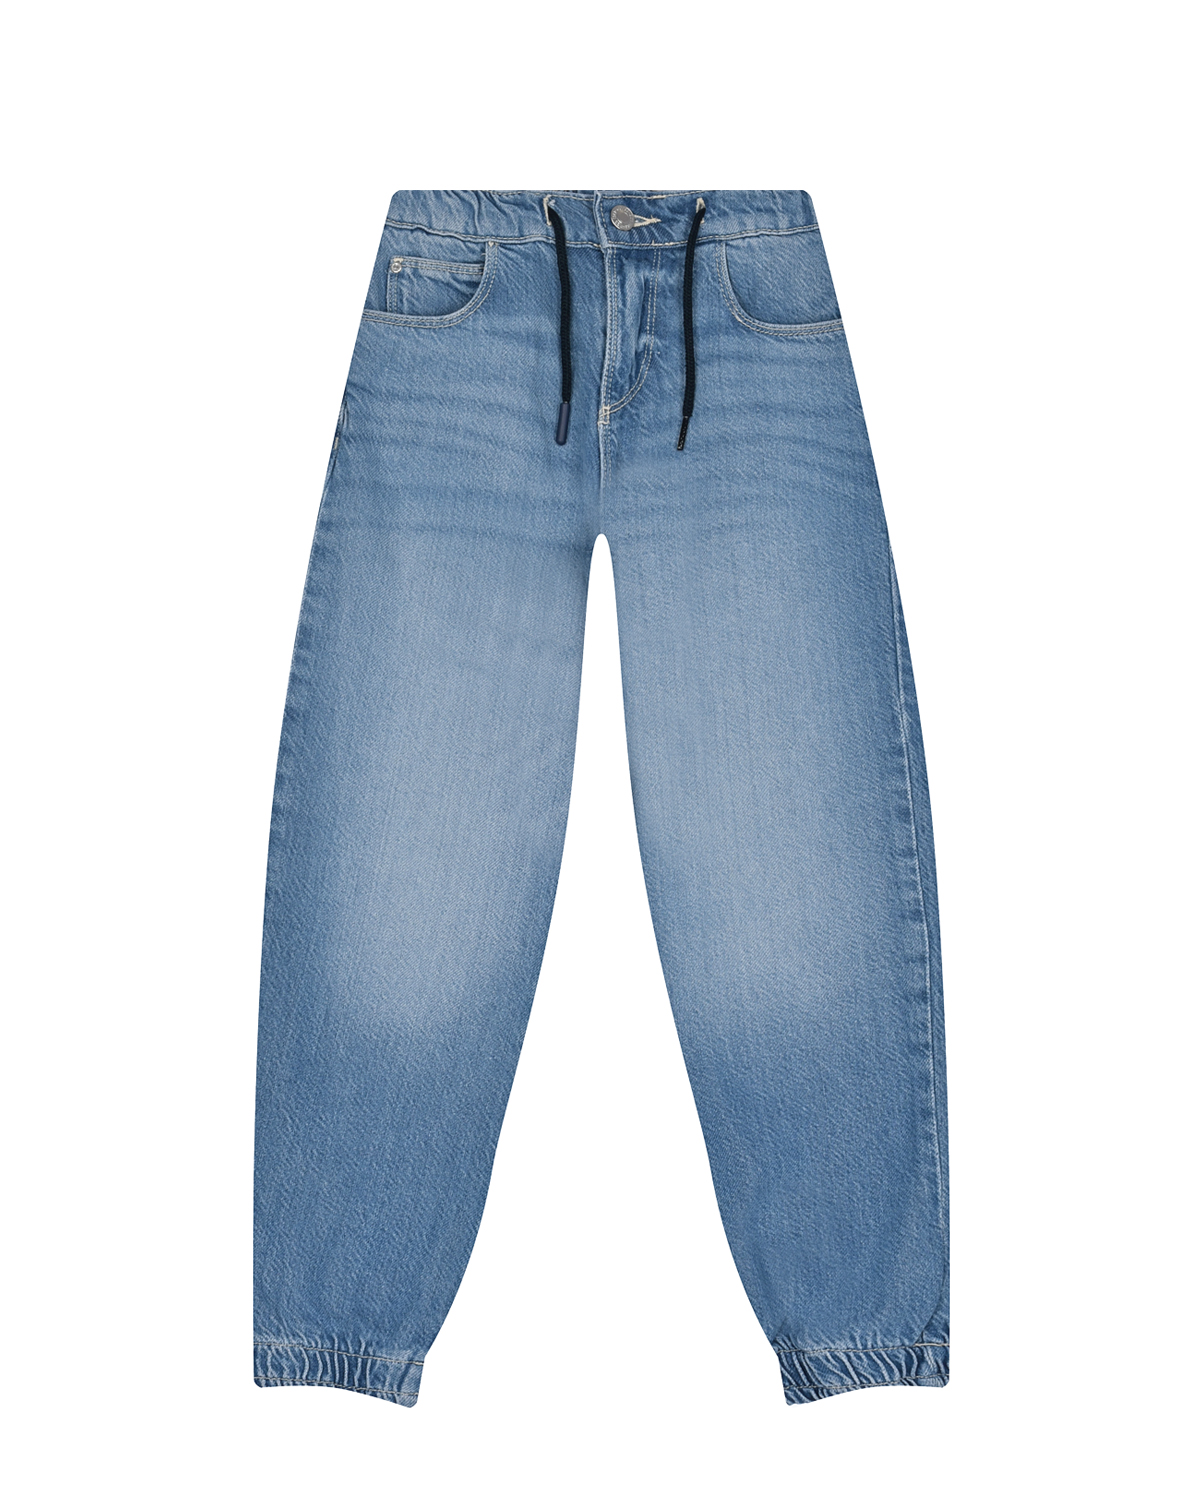 Брюки джинсовые джоггеры Guess детские, размер 122, цвет синий